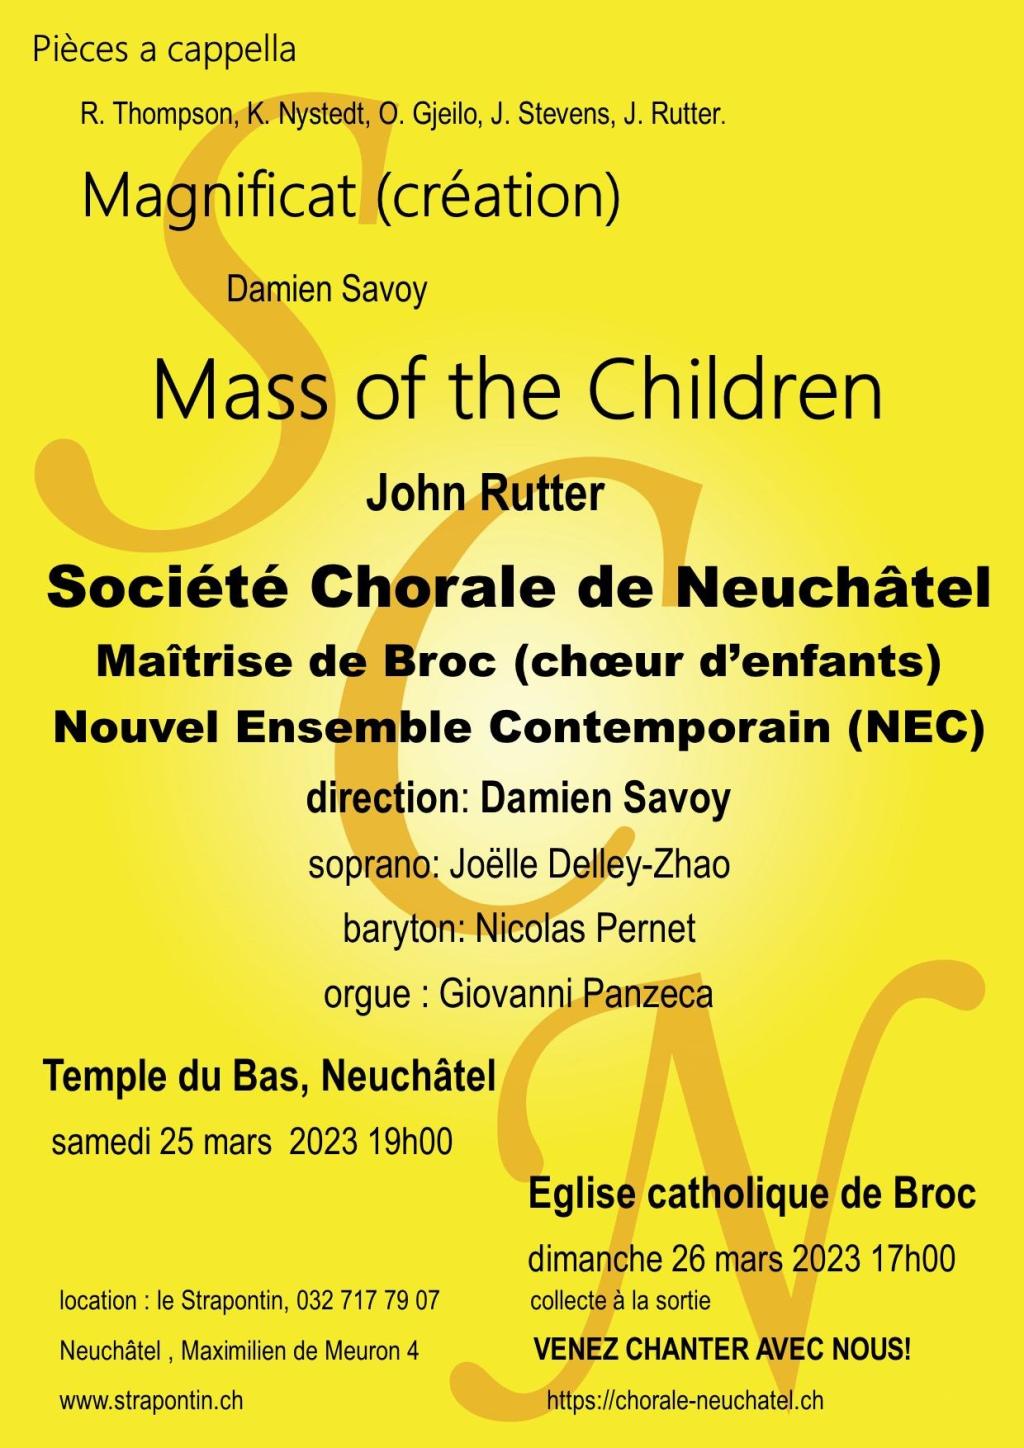 Mass of the Children de John Rutter et autres pièces